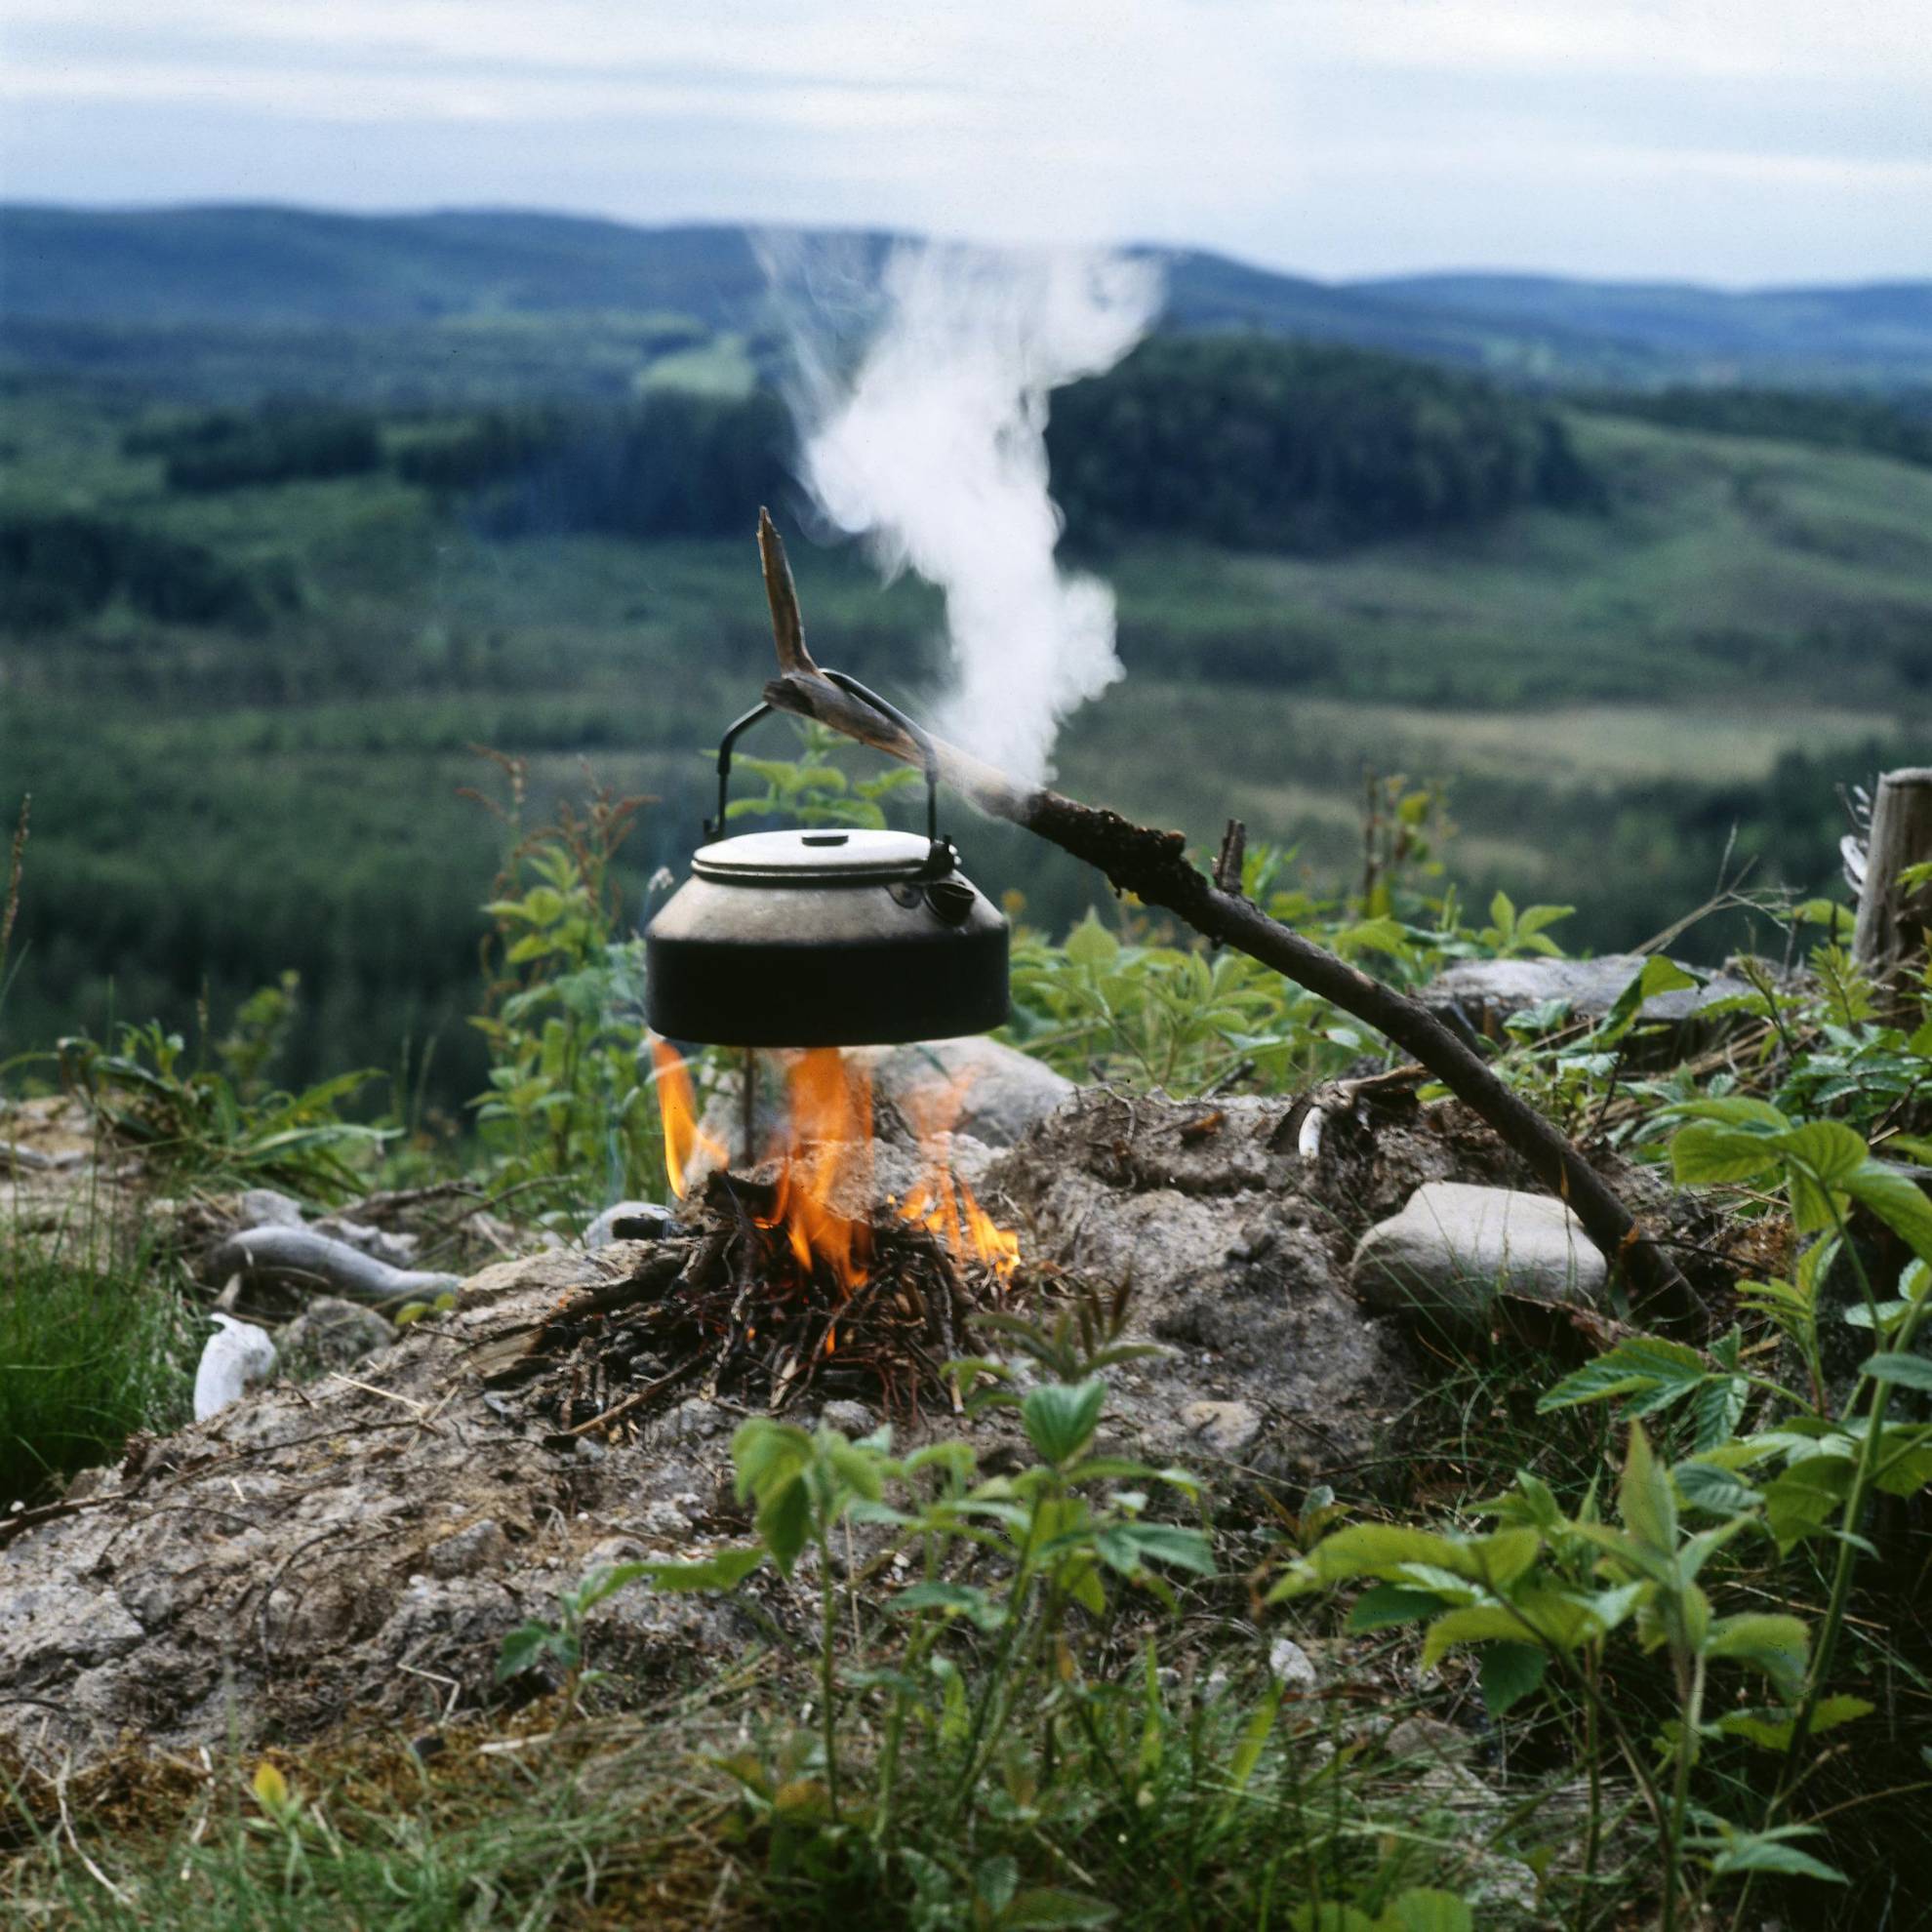 Über einem kleinen Lagerfeuer hängt ein schwarzer Topf an einem Stock. Es dampft aus dem Topf. Im Hintergrund öffnet sich ein Tal mit  bewaldeten Hügeln.